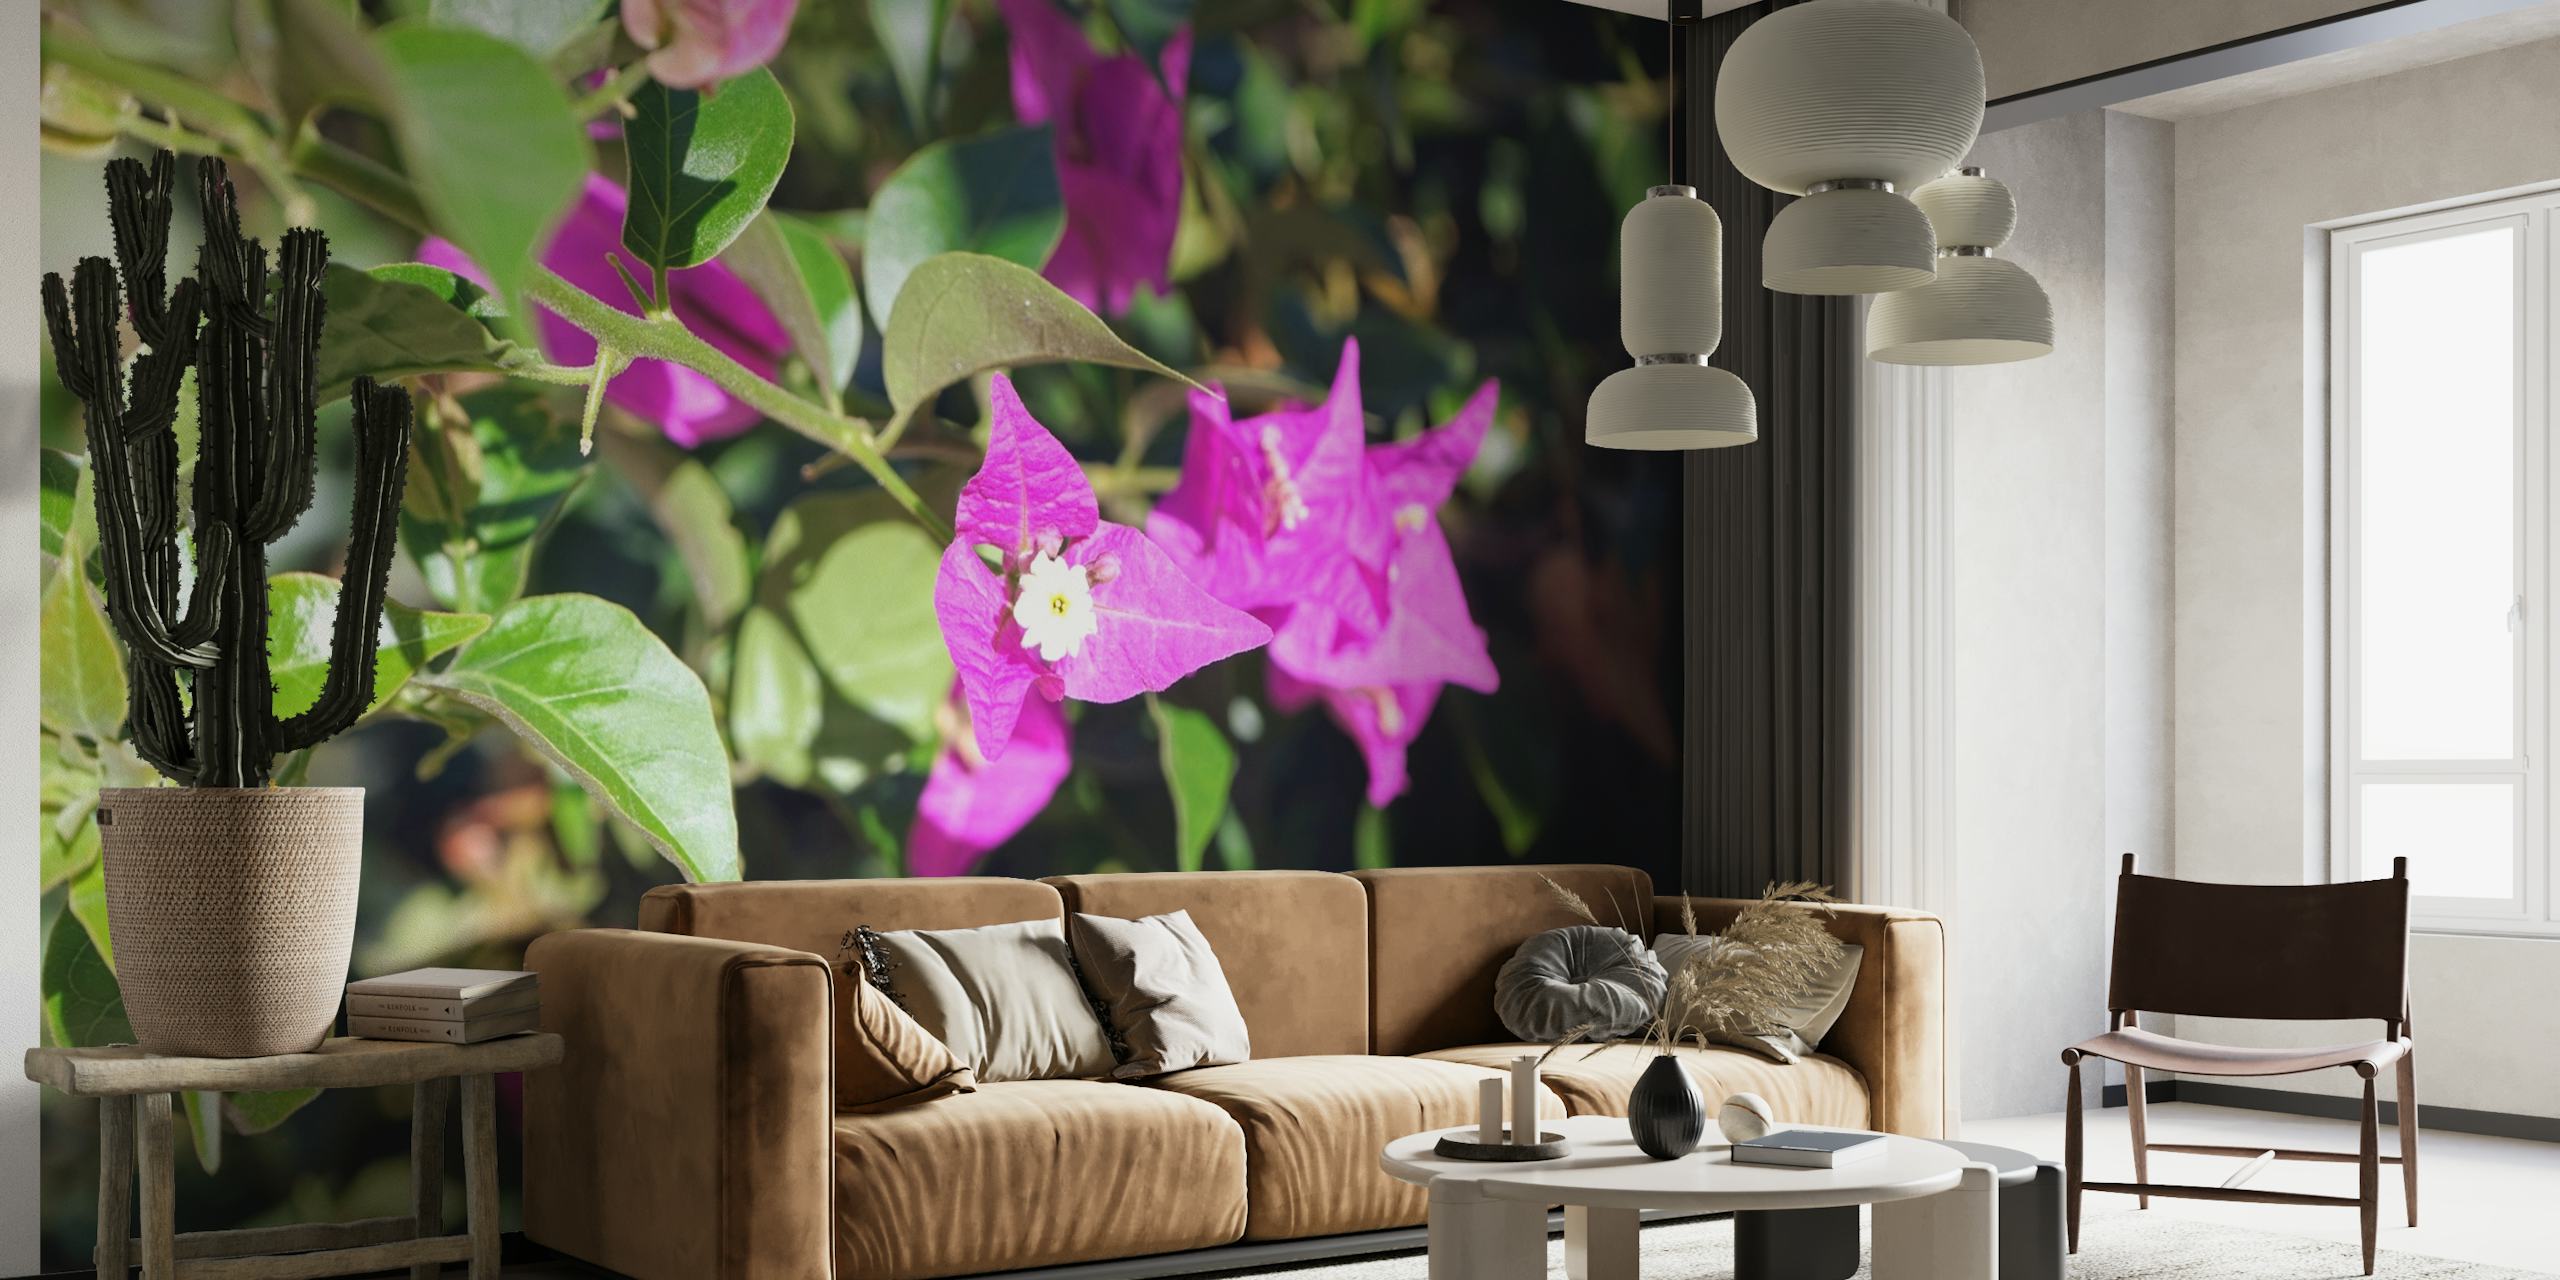 Fotomural vinílico de parede de flores buganvílias rosa e magenta vivas contra folhas verdes exuberantes.